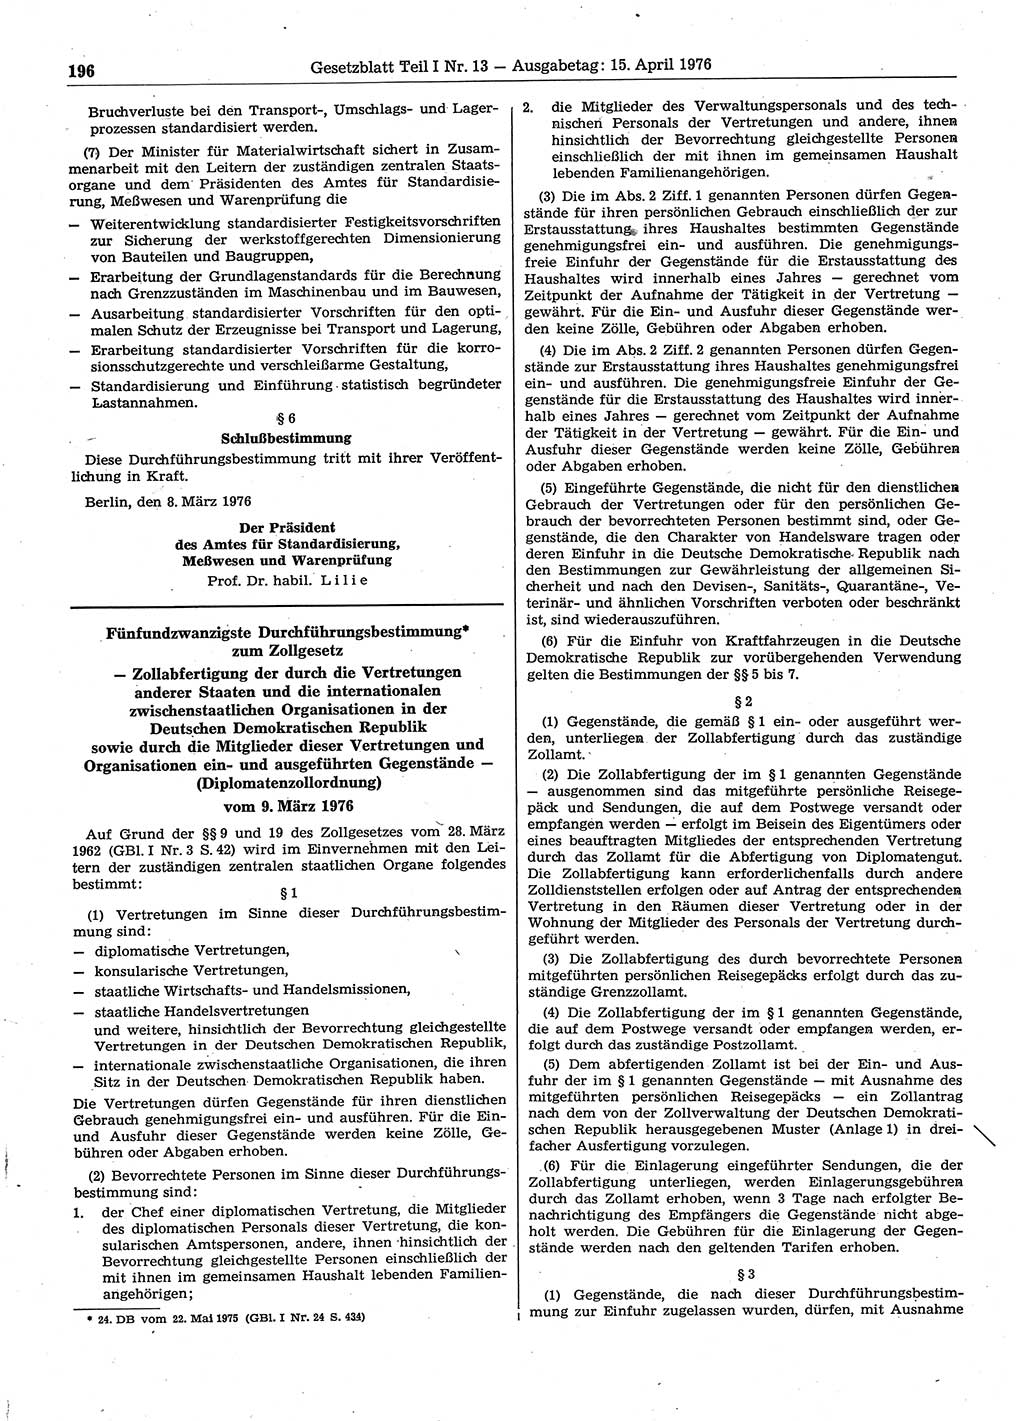 Gesetzblatt (GBl.) der Deutschen Demokratischen Republik (DDR) Teil Ⅰ 1976, Seite 196 (GBl. DDR Ⅰ 1976, S. 196)